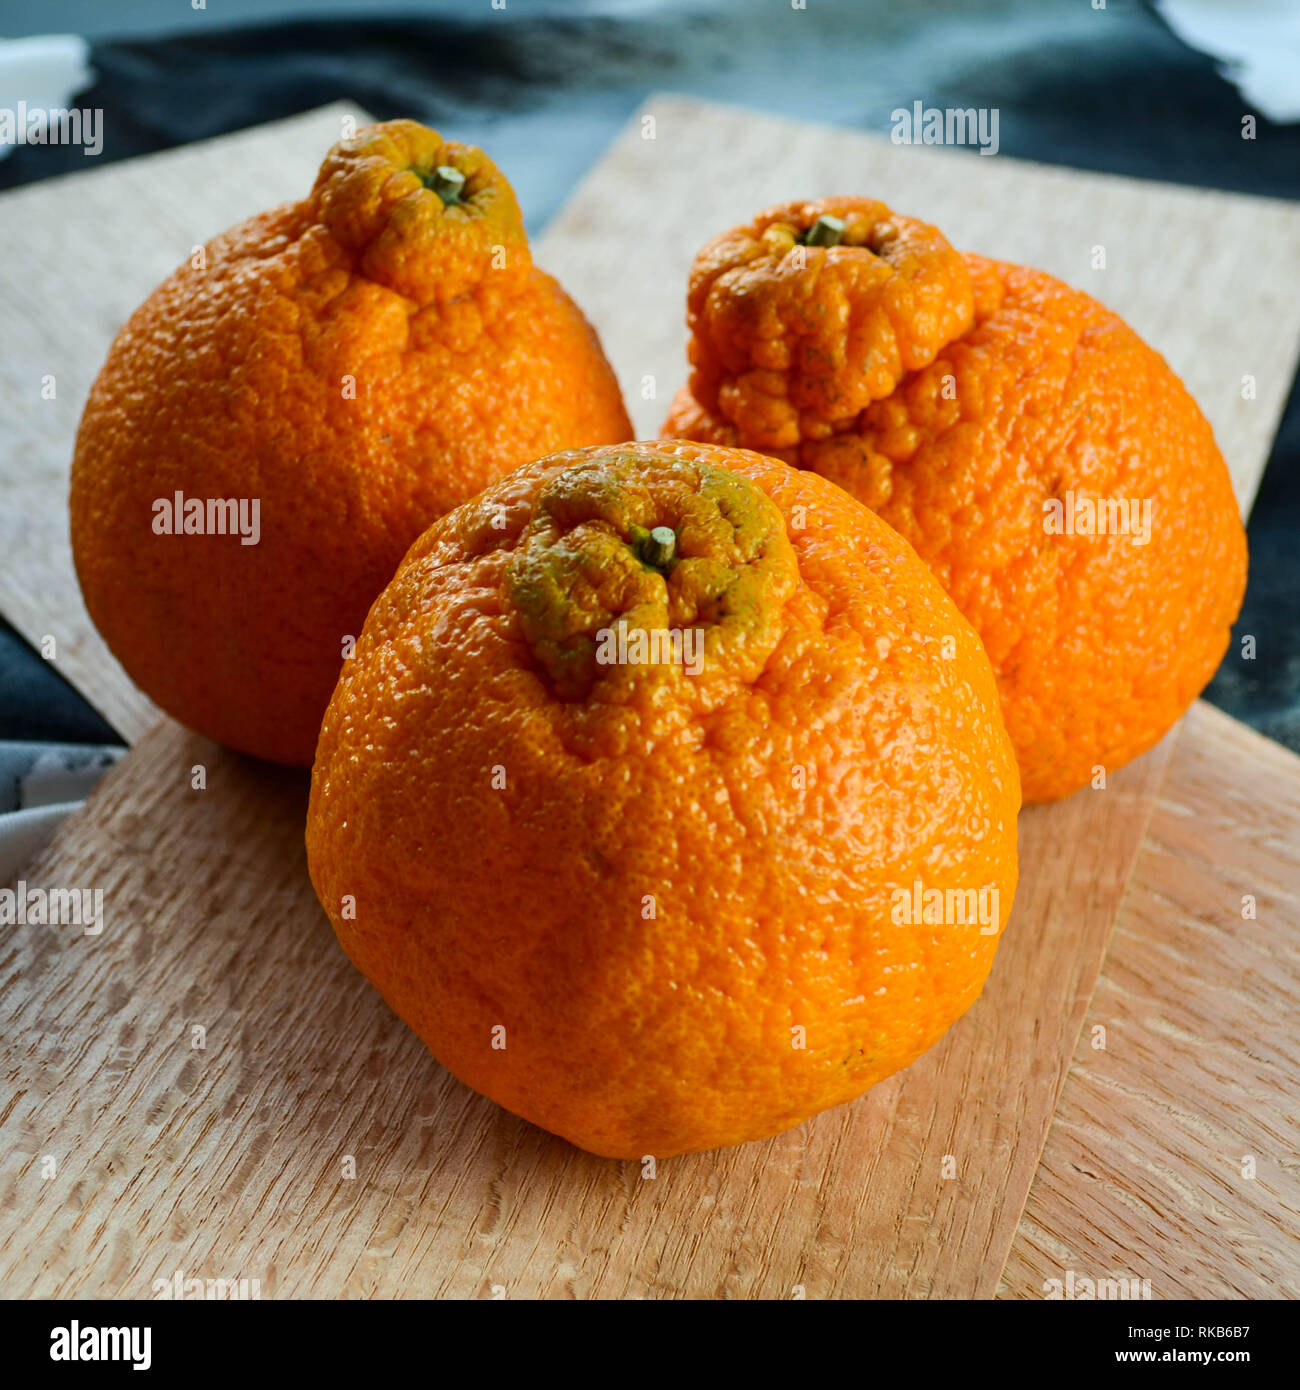 https://c8.alamy.com/comp/RKB6B7/dekopon-aka-sumo-citrus-fruits-RKB6B7.jpg